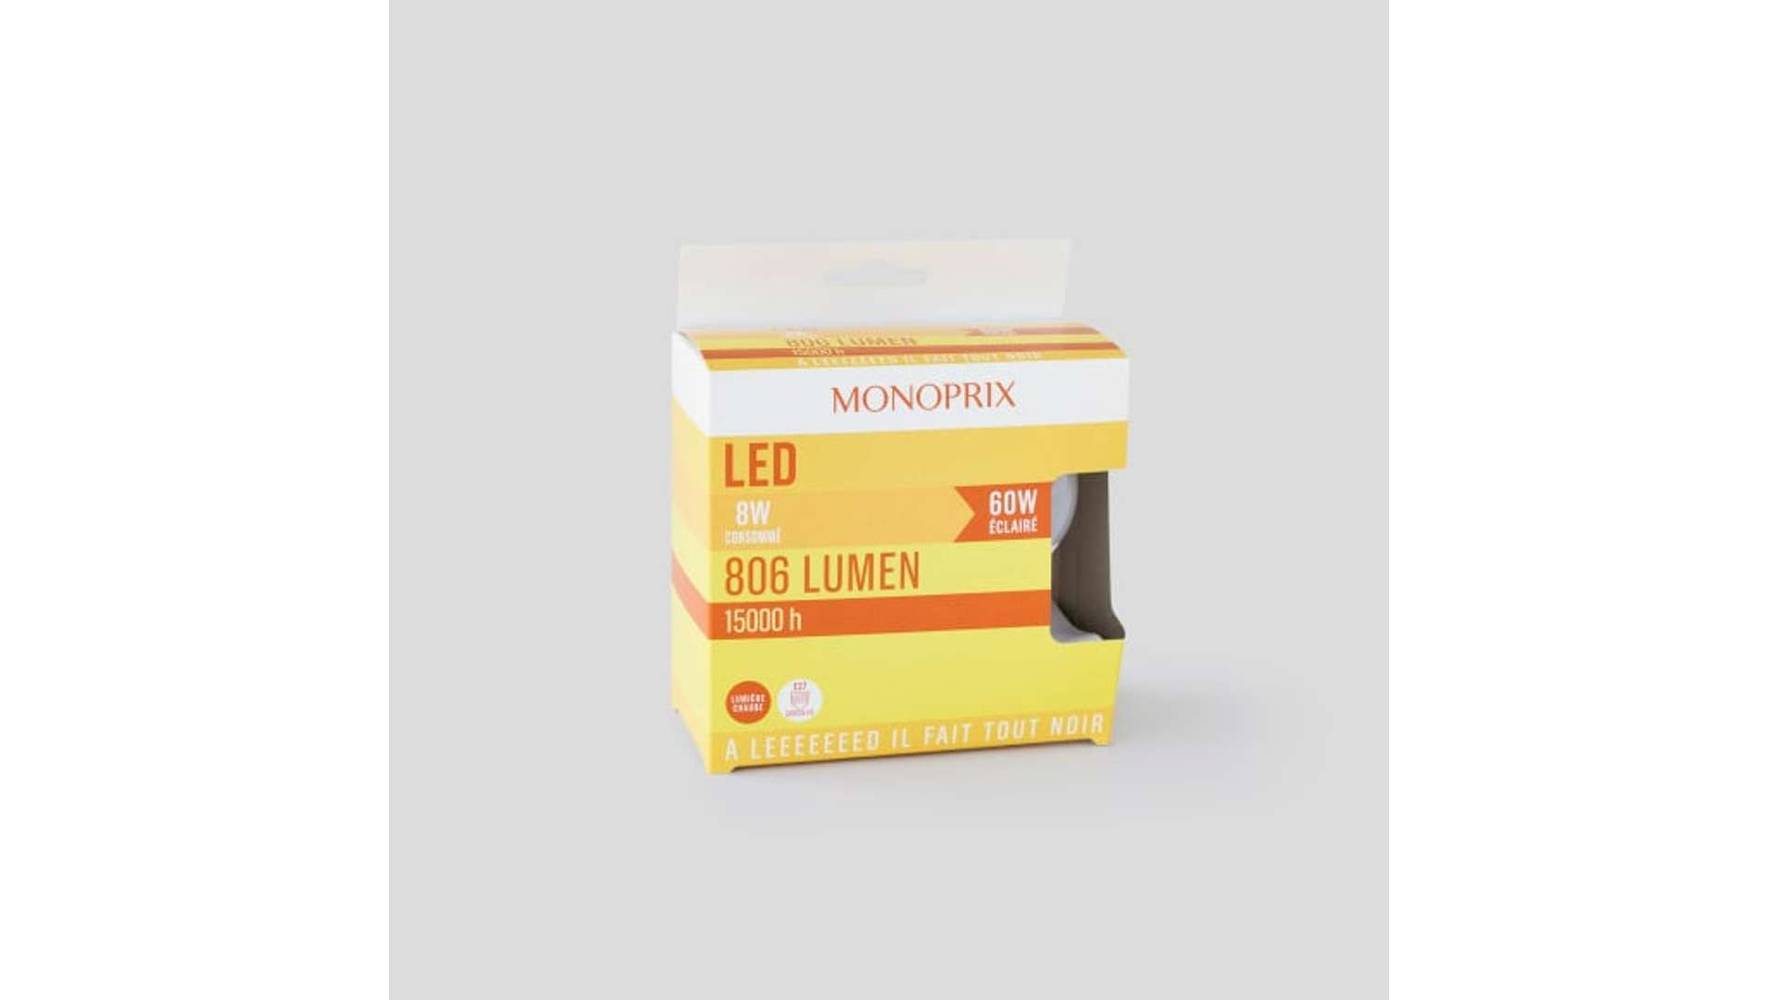 Monoprix Ampoule led standard 60W E27 806 lumen Les 2 ampoules